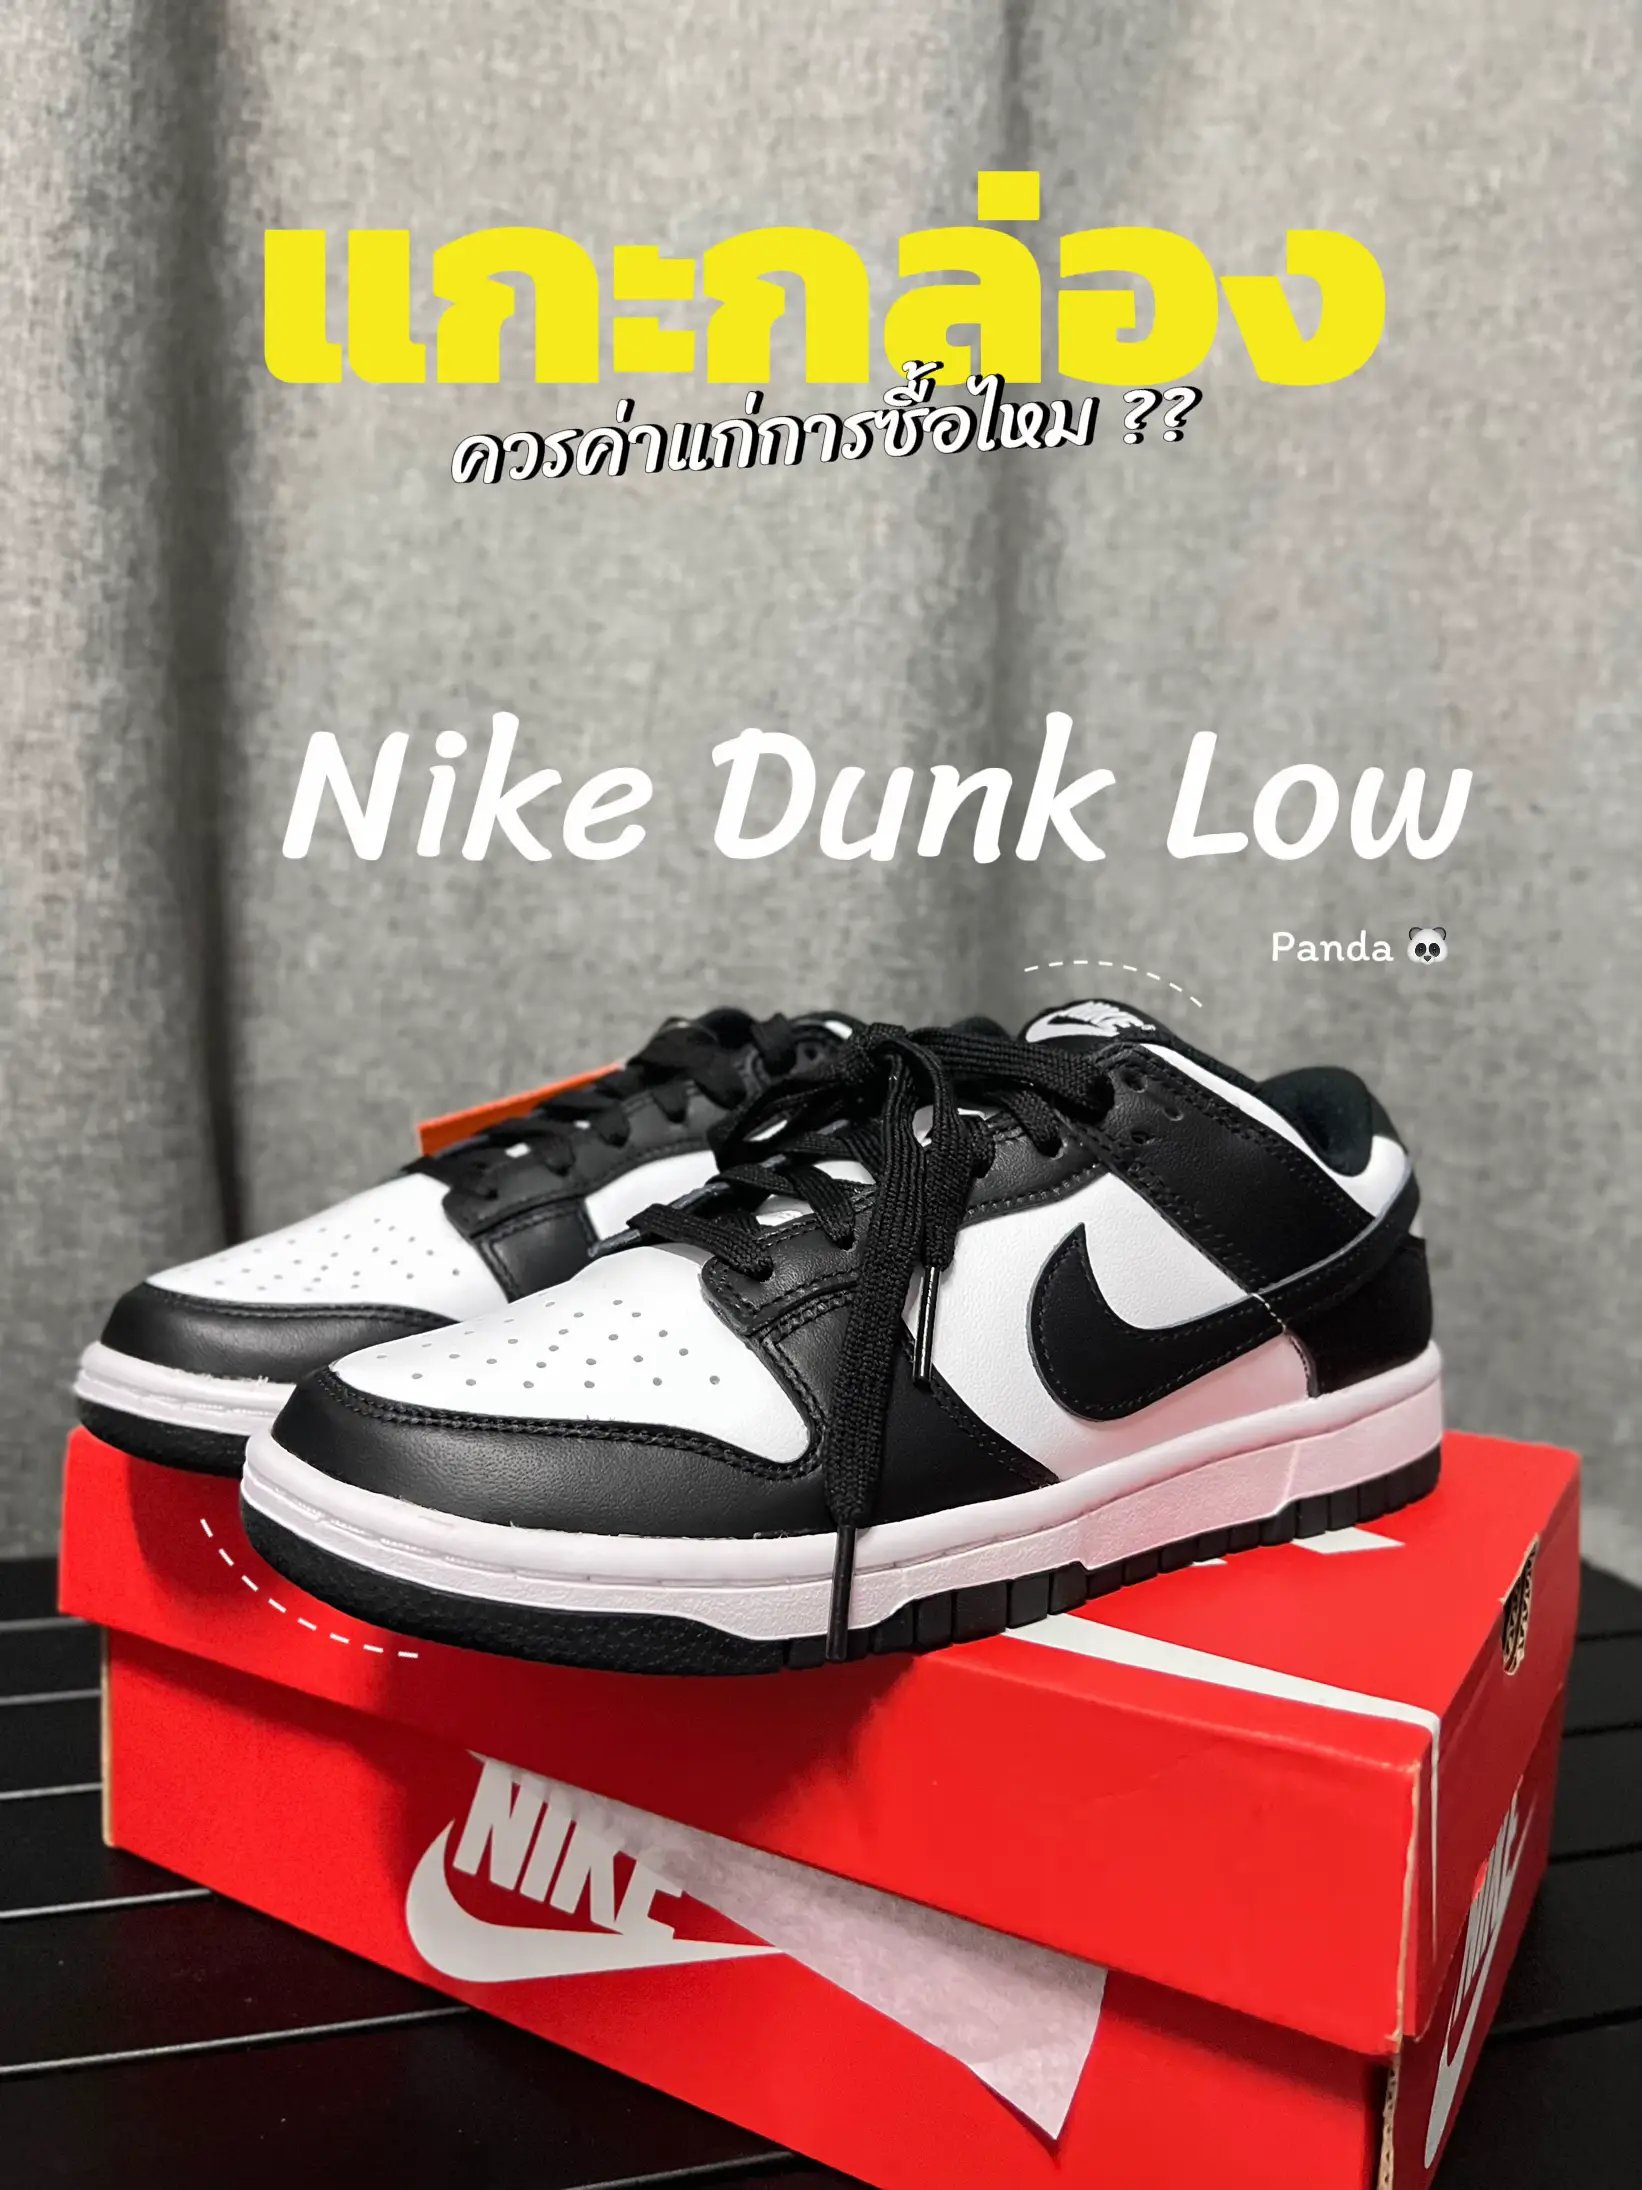 20 ไอเดียยอดนิยมเกี่ยวกับ รองเท้า Nike Dunk ต้อง เผื่อ ไซส์